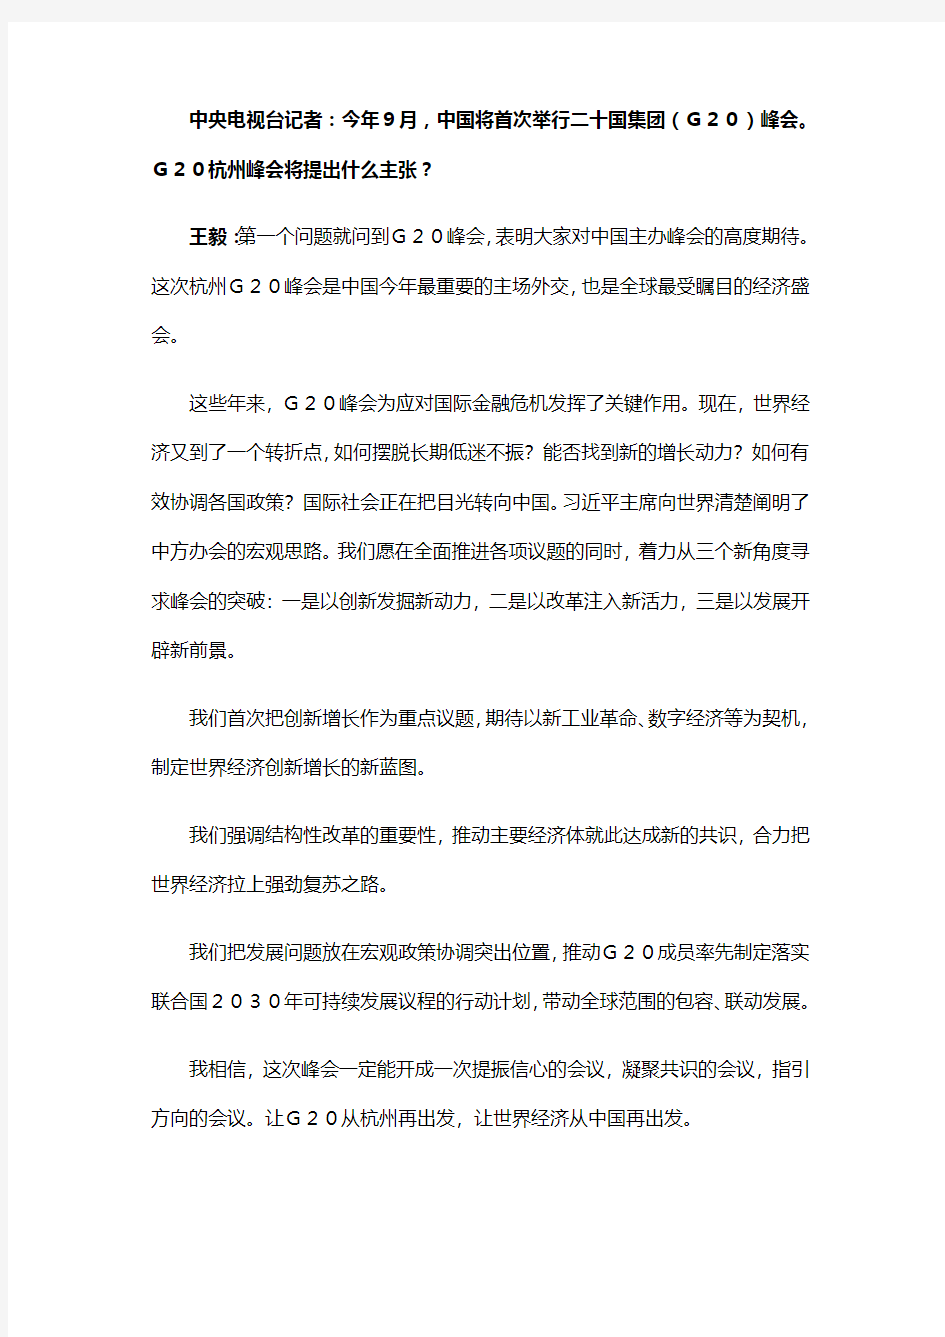 王毅就中国外交政策和对外关系回答中外记者提问